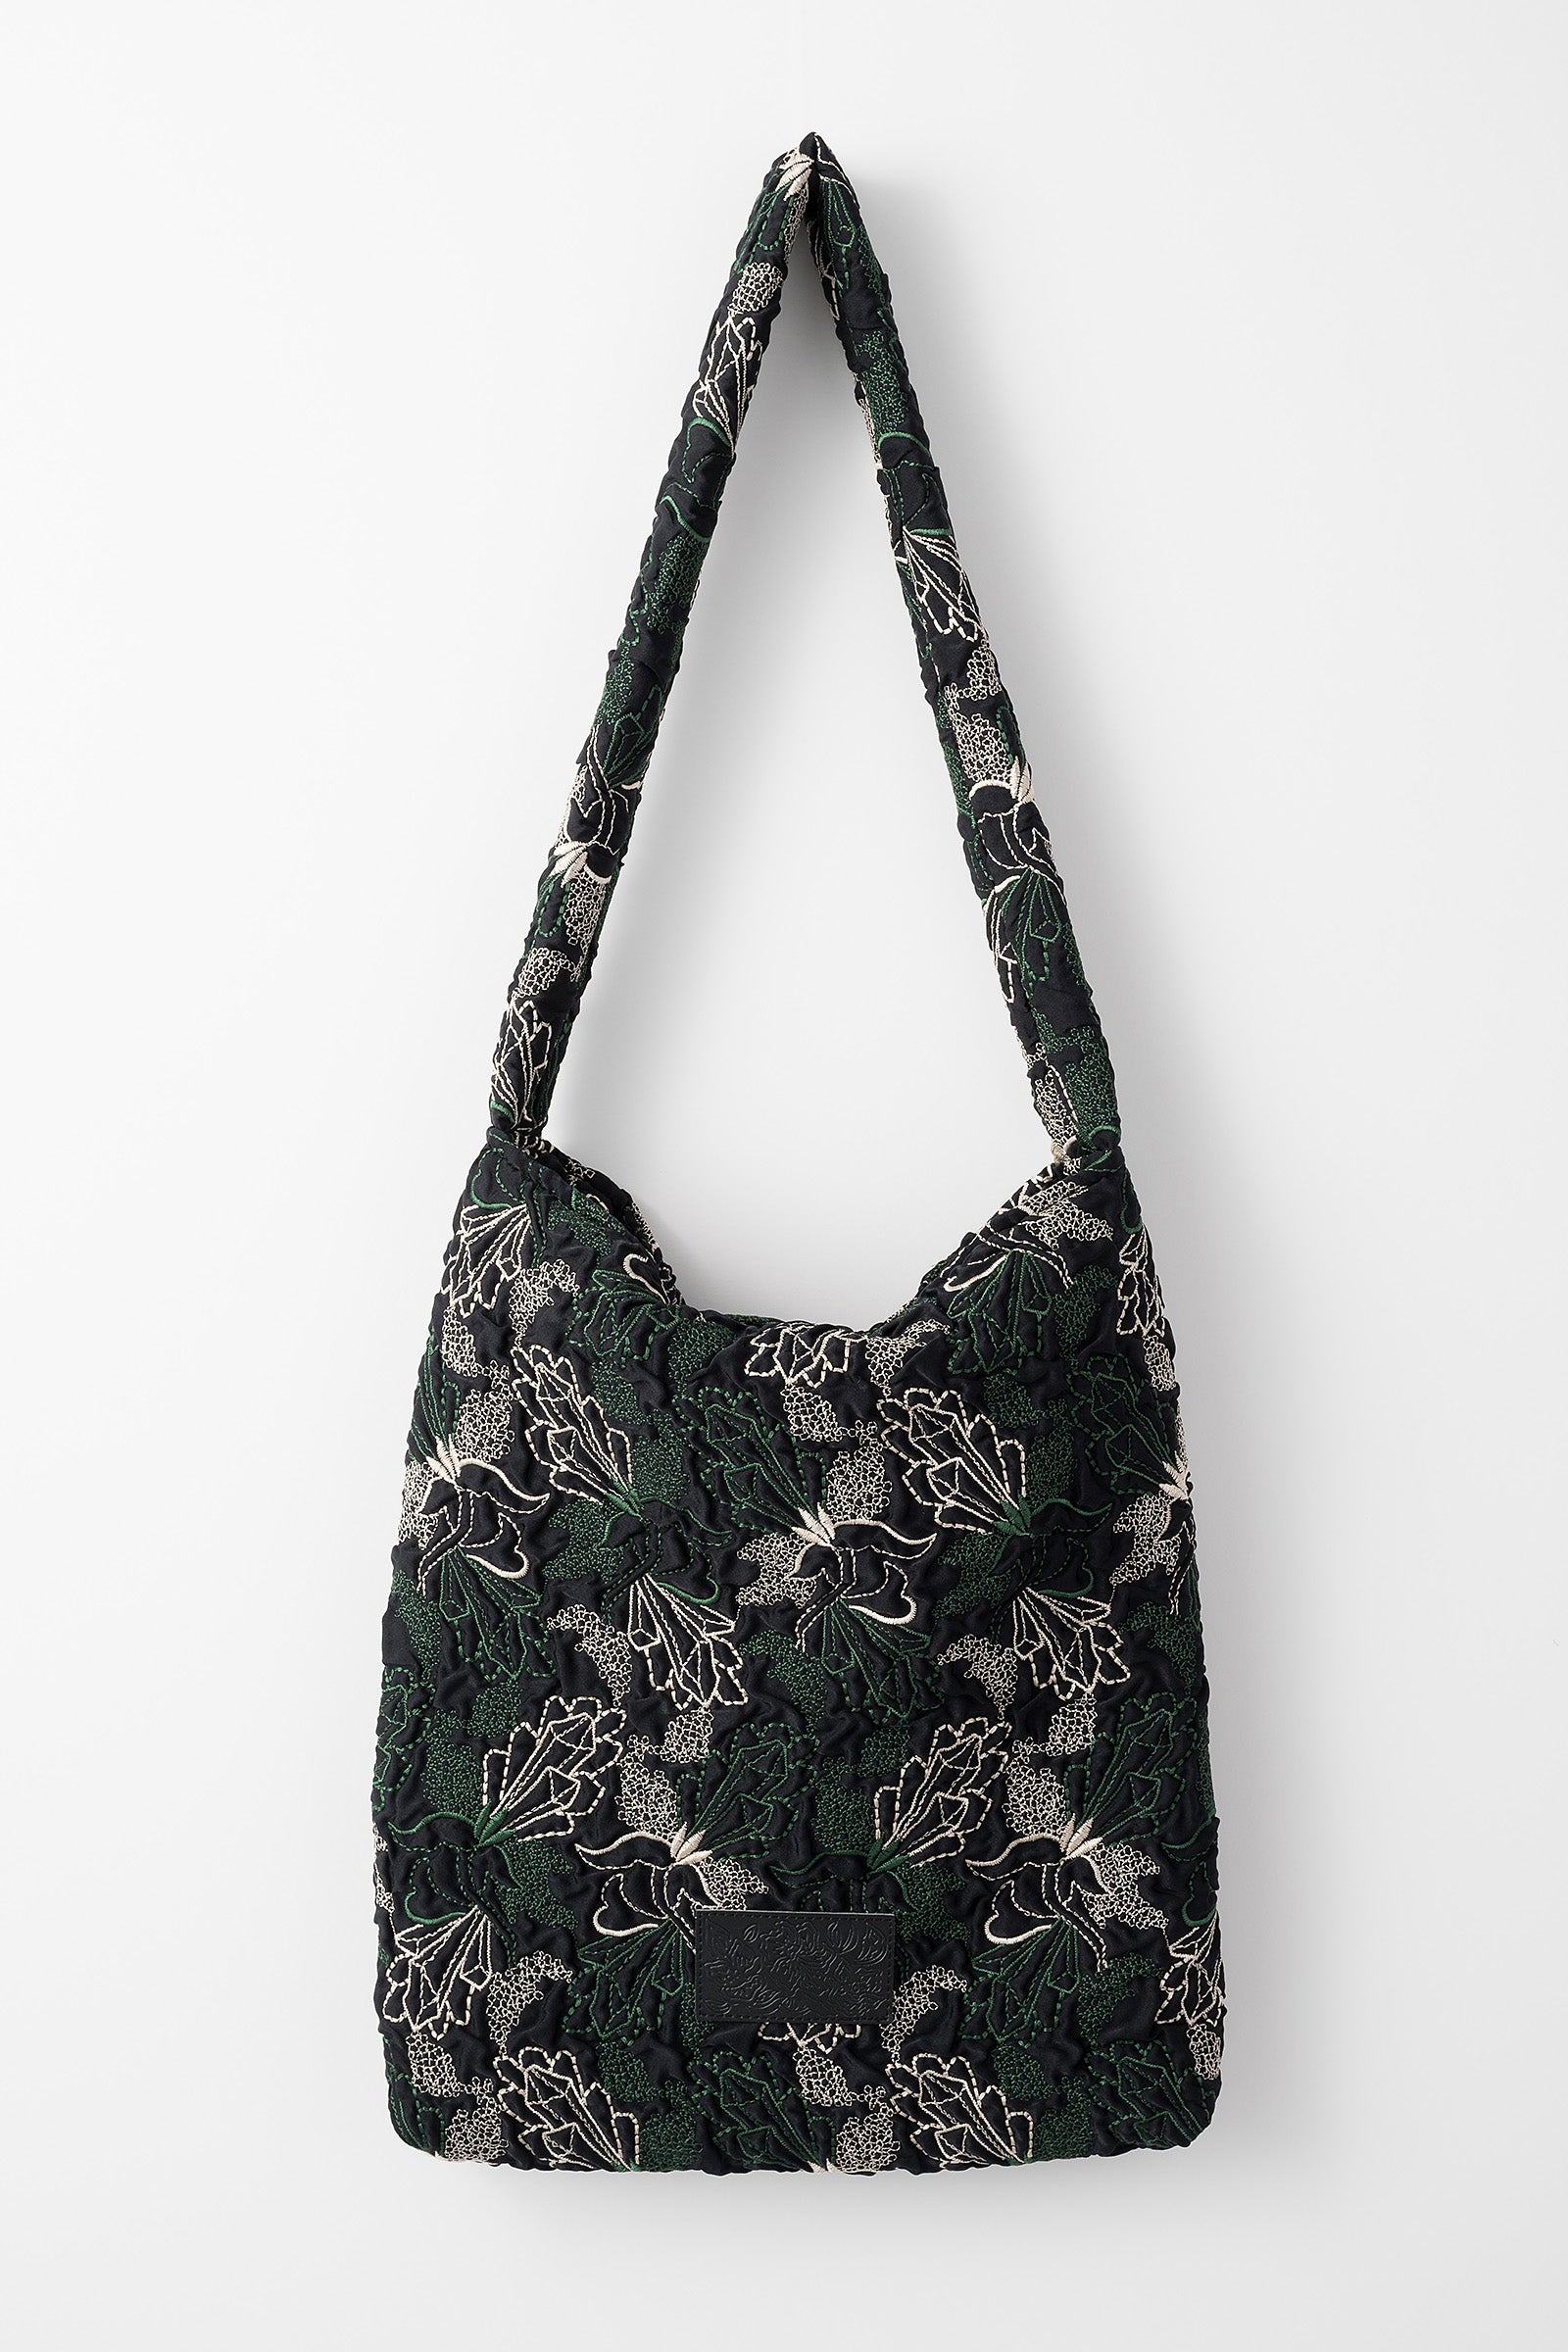 15,299円Quartz embroidery cuddle bag